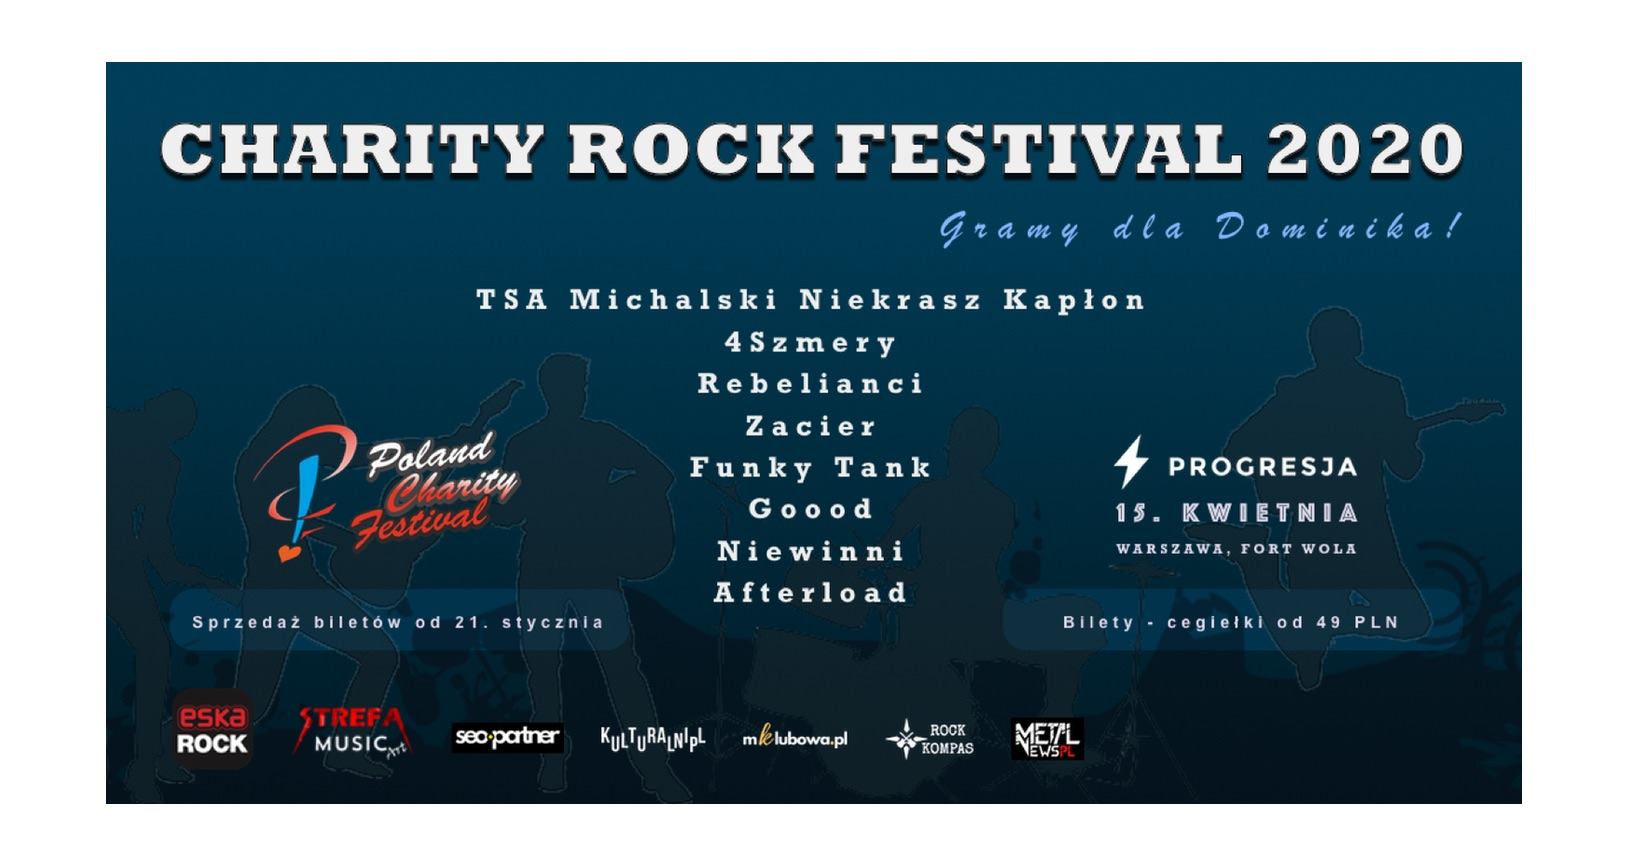 FUNKY TANK - Charity Rock Festival 2020